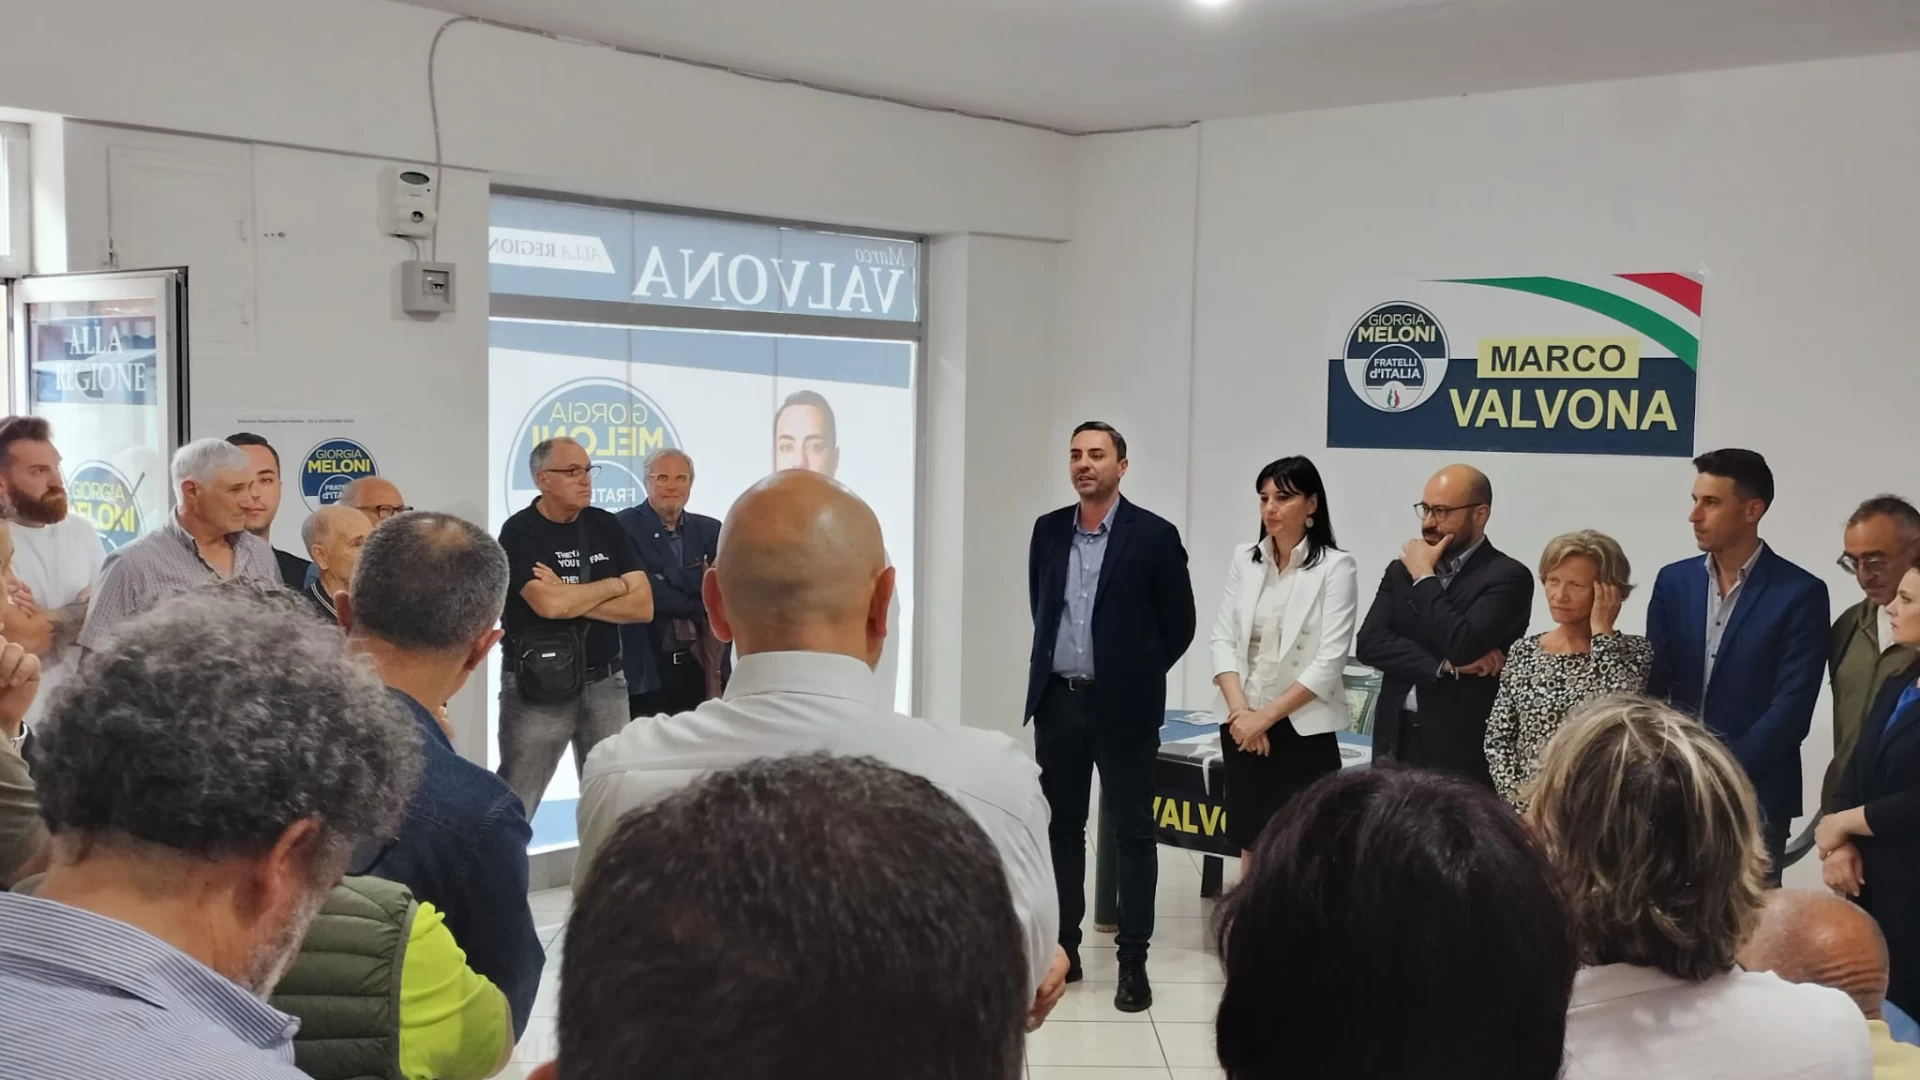 Regionali: Marco Valvona ha incontrato gli elettori a Venafro. "Presentate le idee progettuali per il Molise".